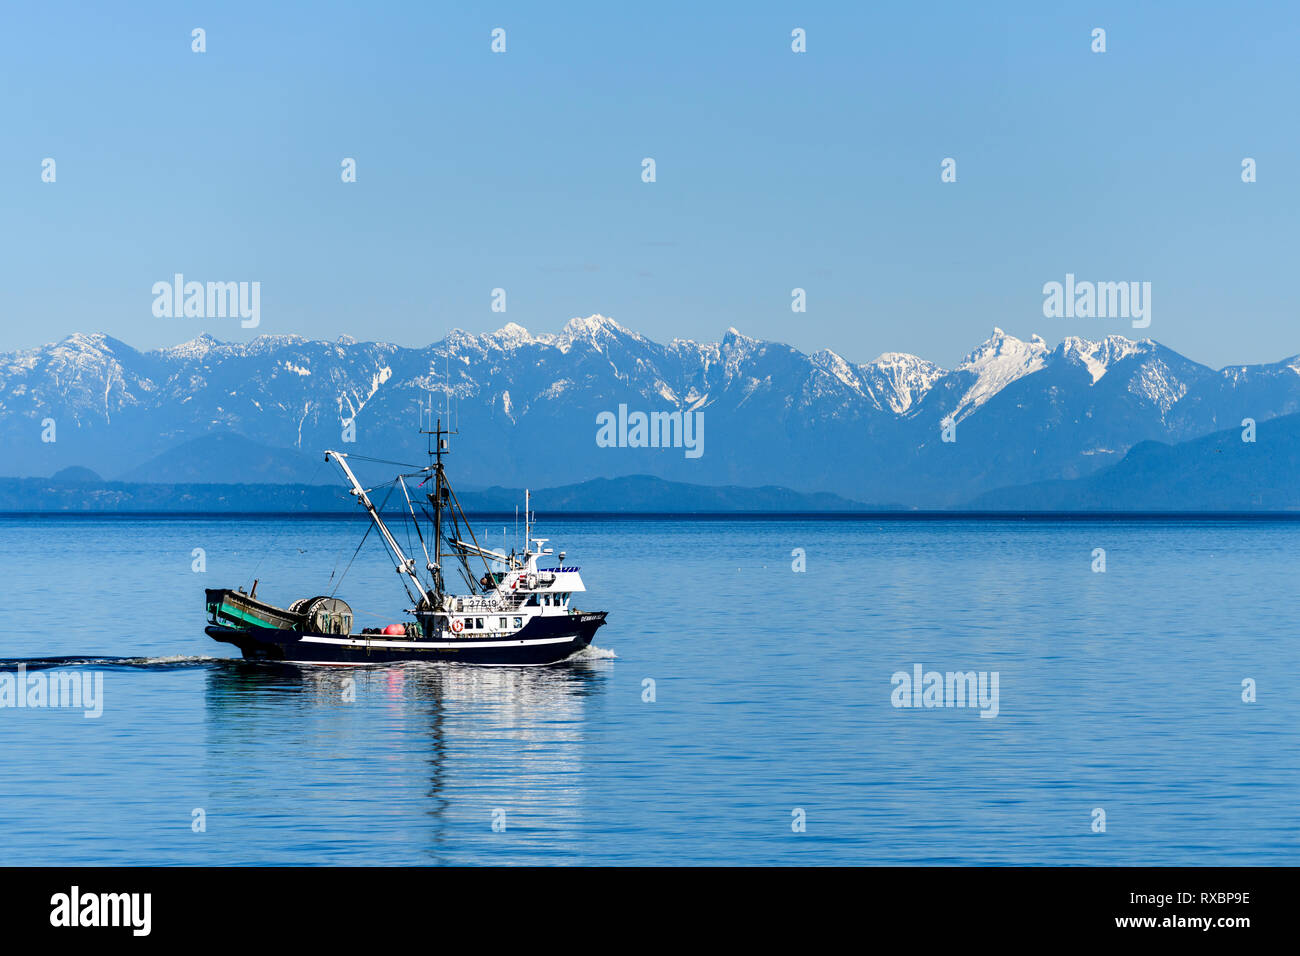 A seine fishing vessel in the Salish Sea near Nanaimo, British Columbia, Canada Stock Photo